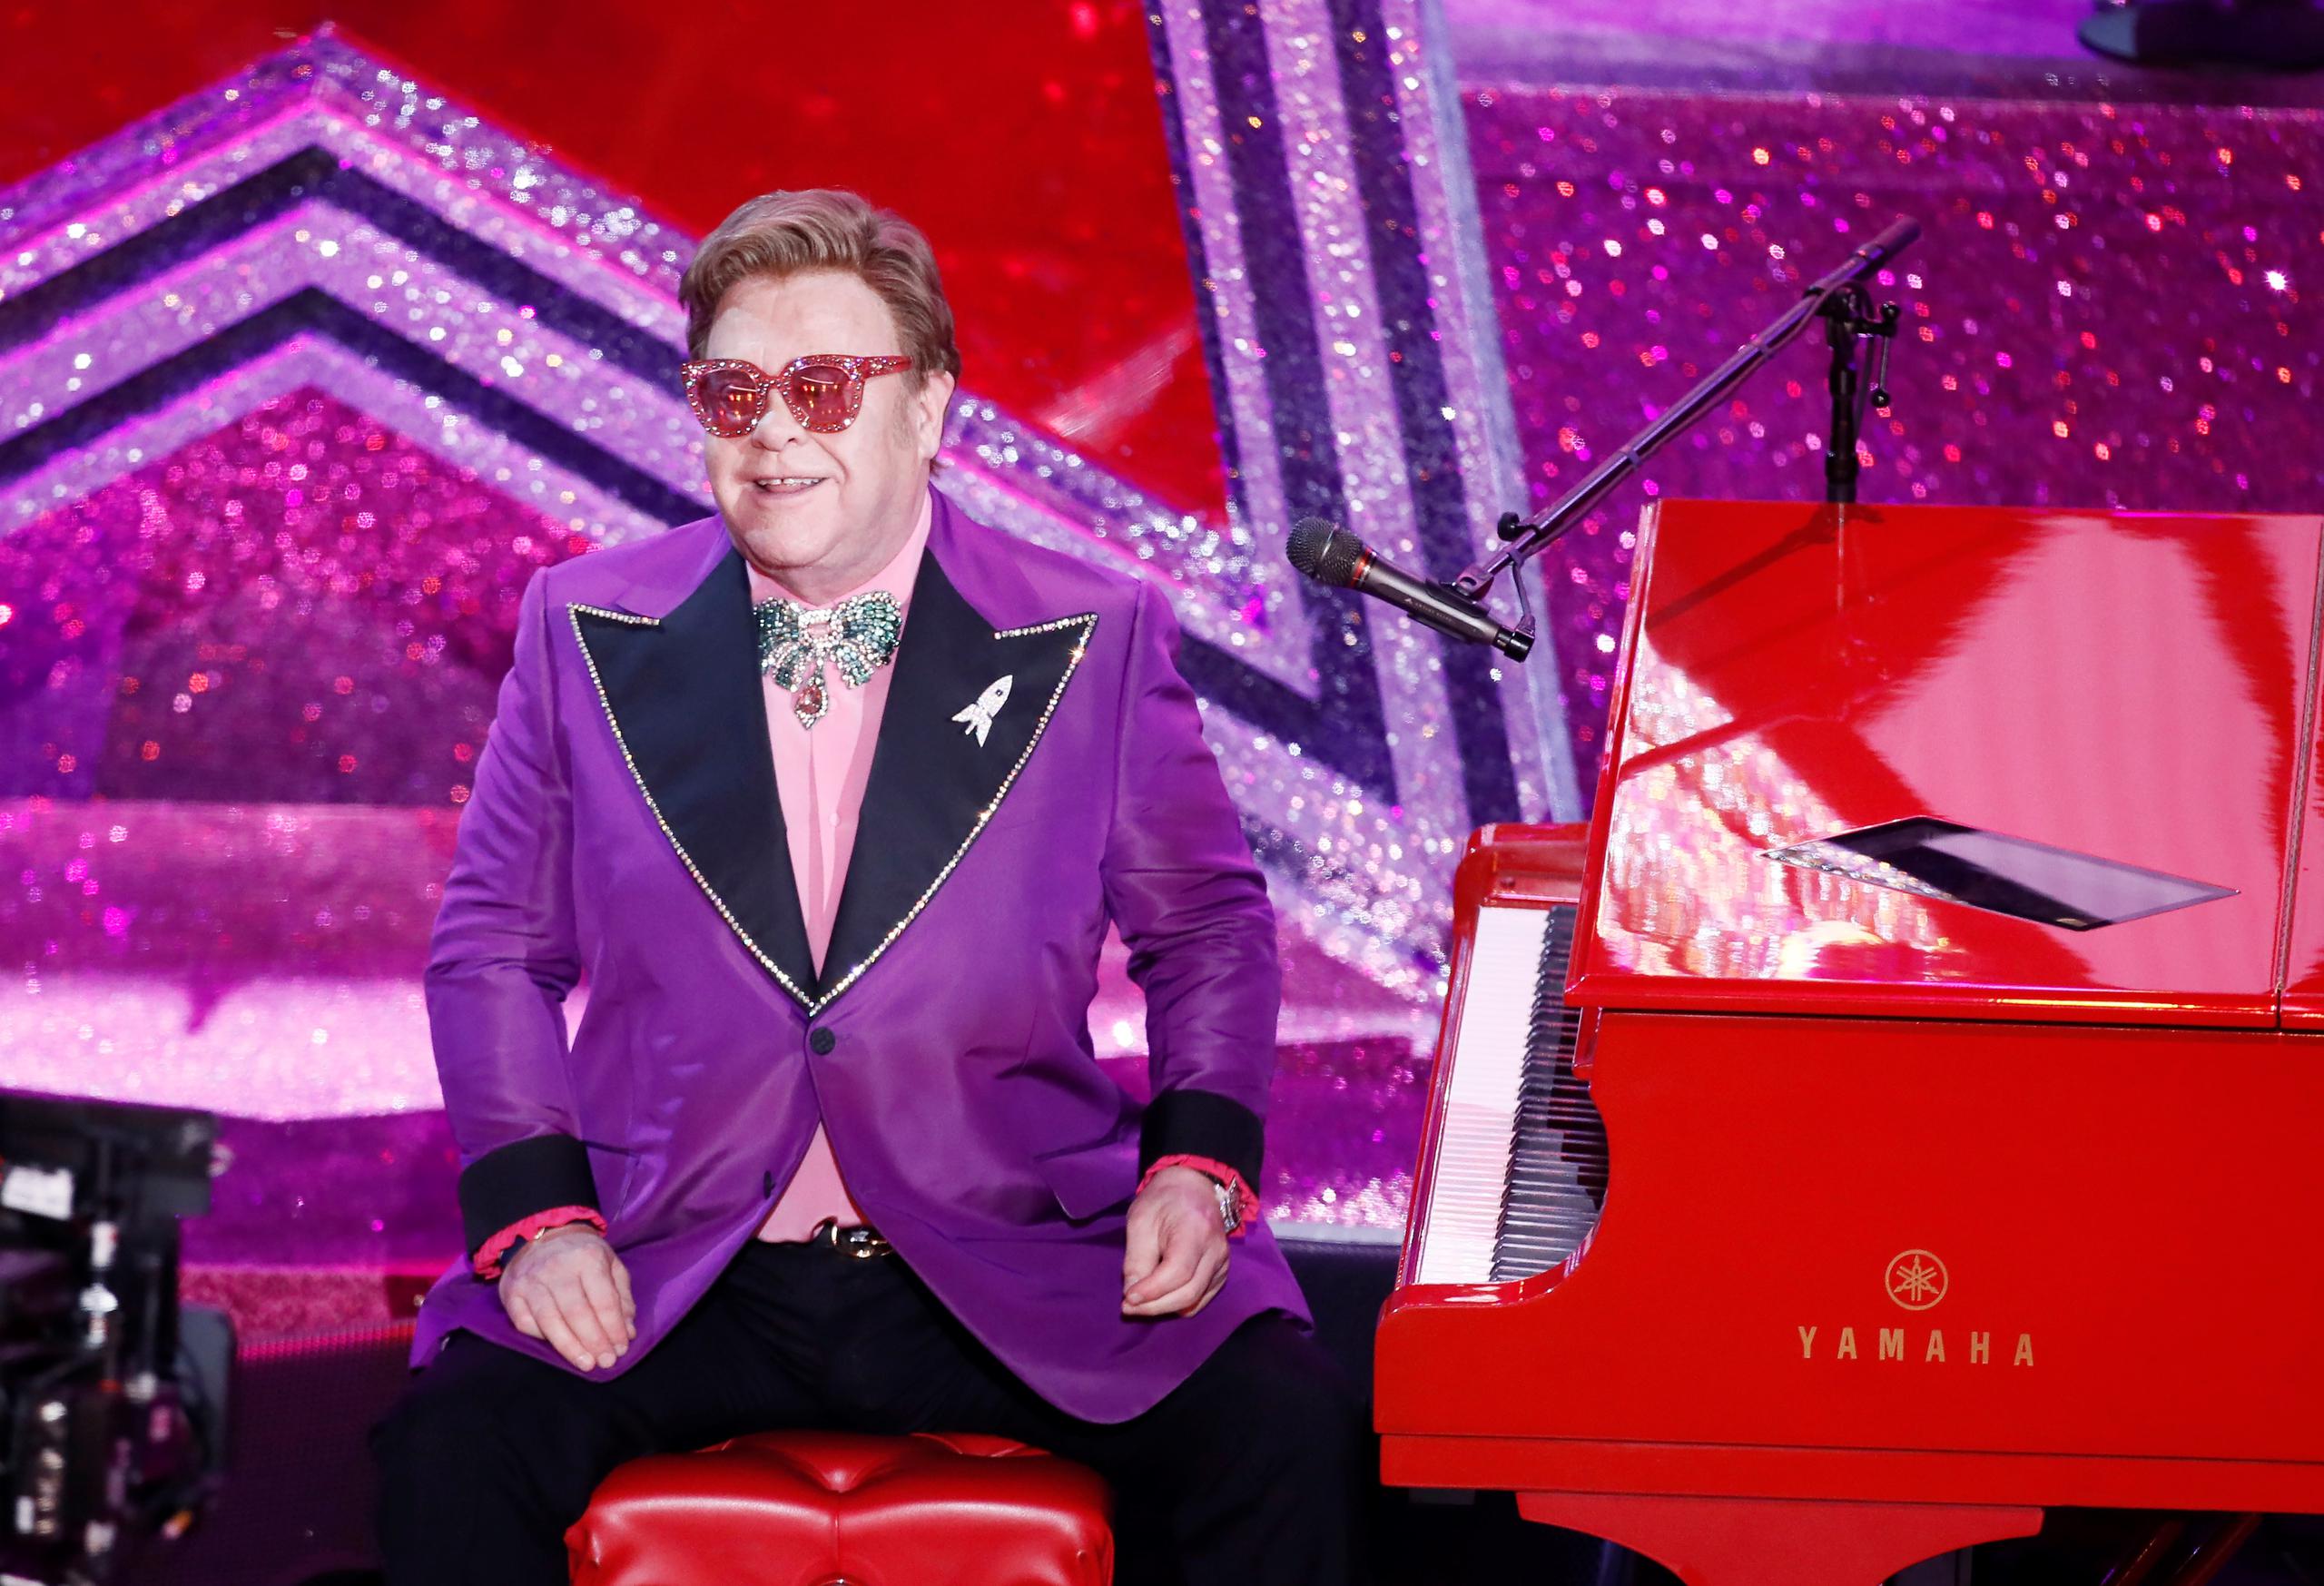 El concierto estelar de Elton John que incluyó a Billie Eilish, Mariah Carey y Alicia Keys el domingo ha recaudado casi 8 millones de dólares para la lucha contra el coronavirus.